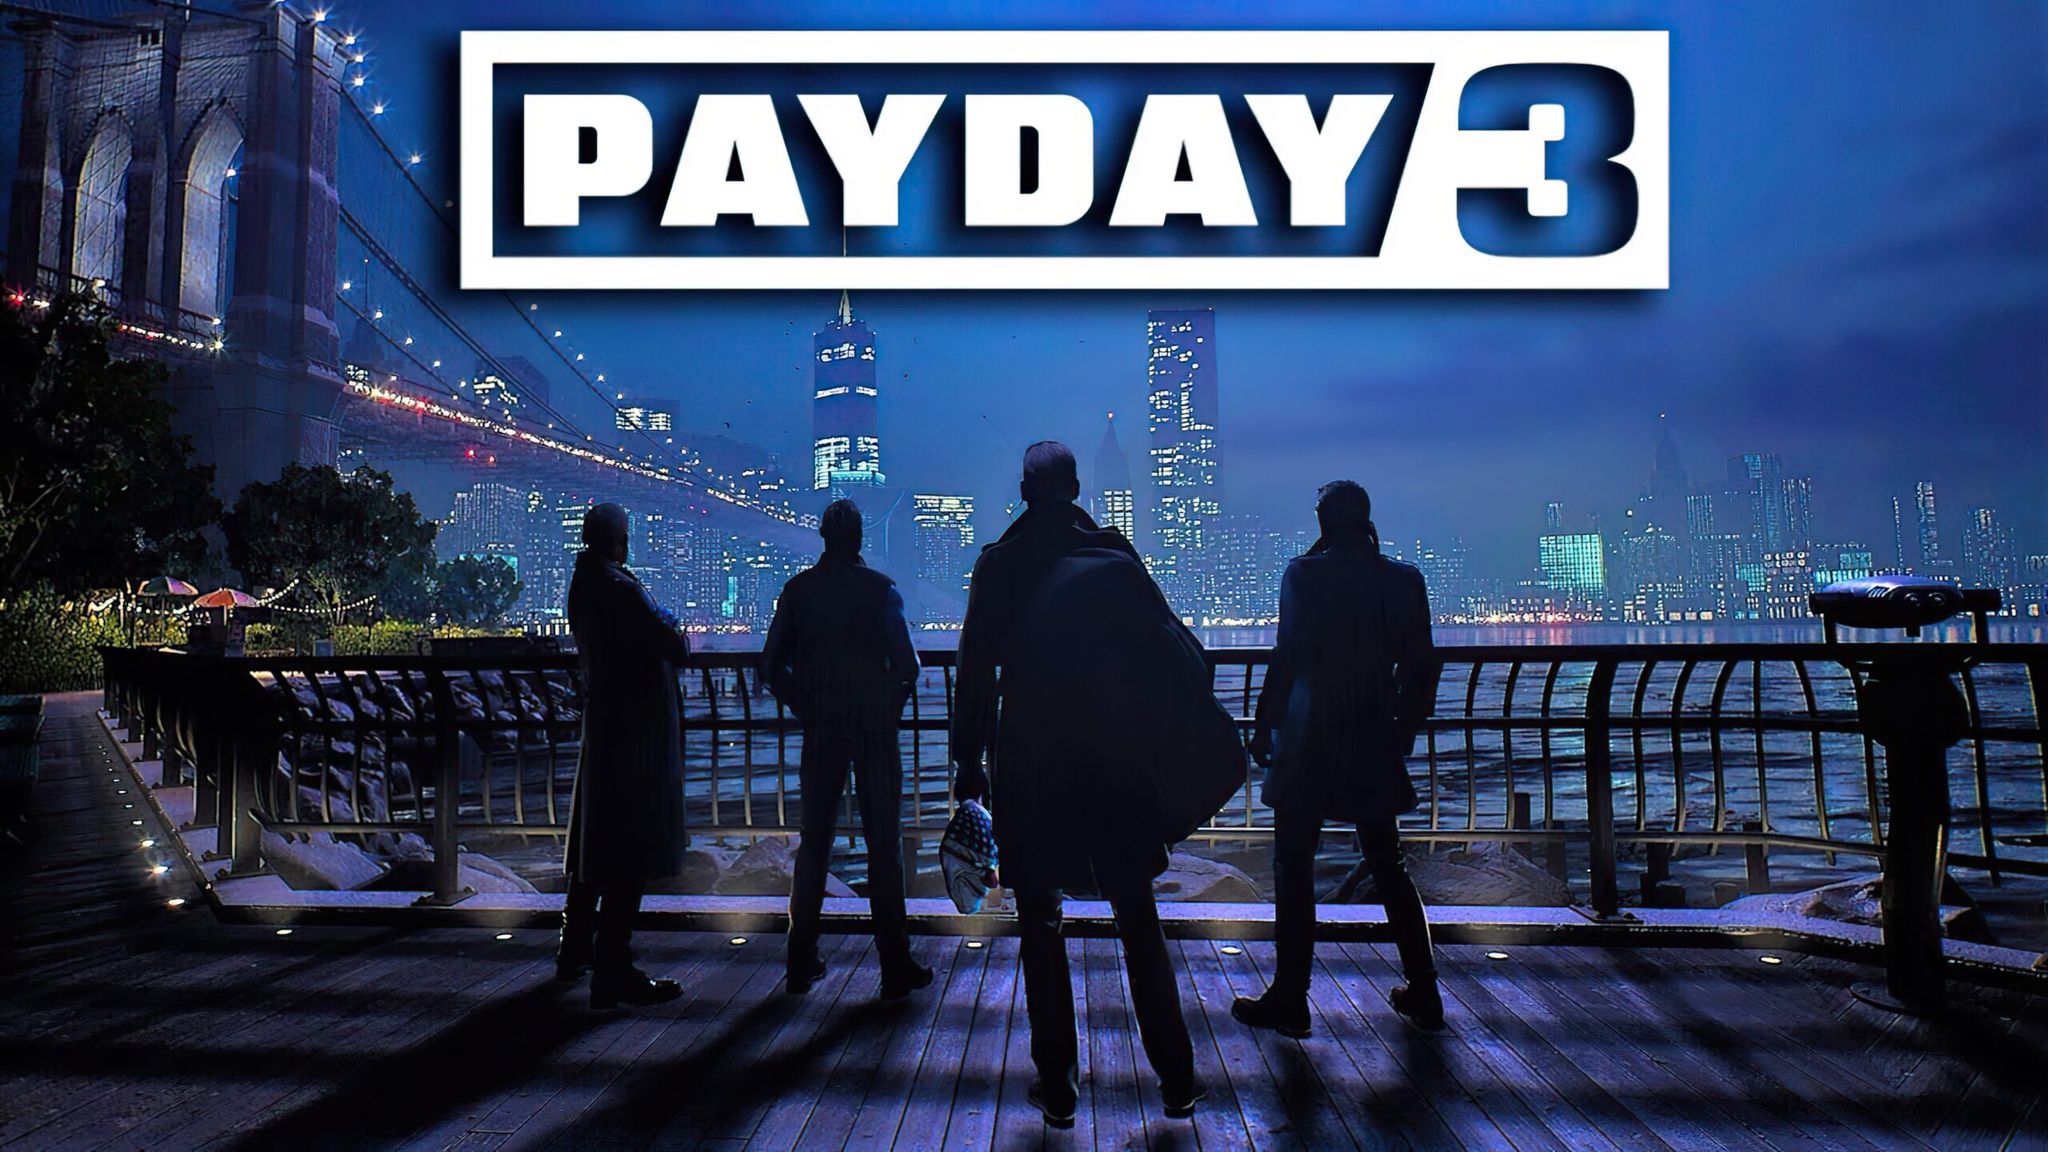 Payday 3 Quyết Sửa Chữa Lỗi Lầm Khi Tung Ra Hơn 200 Cập Nhật Mới Trong Tháng 10 Này